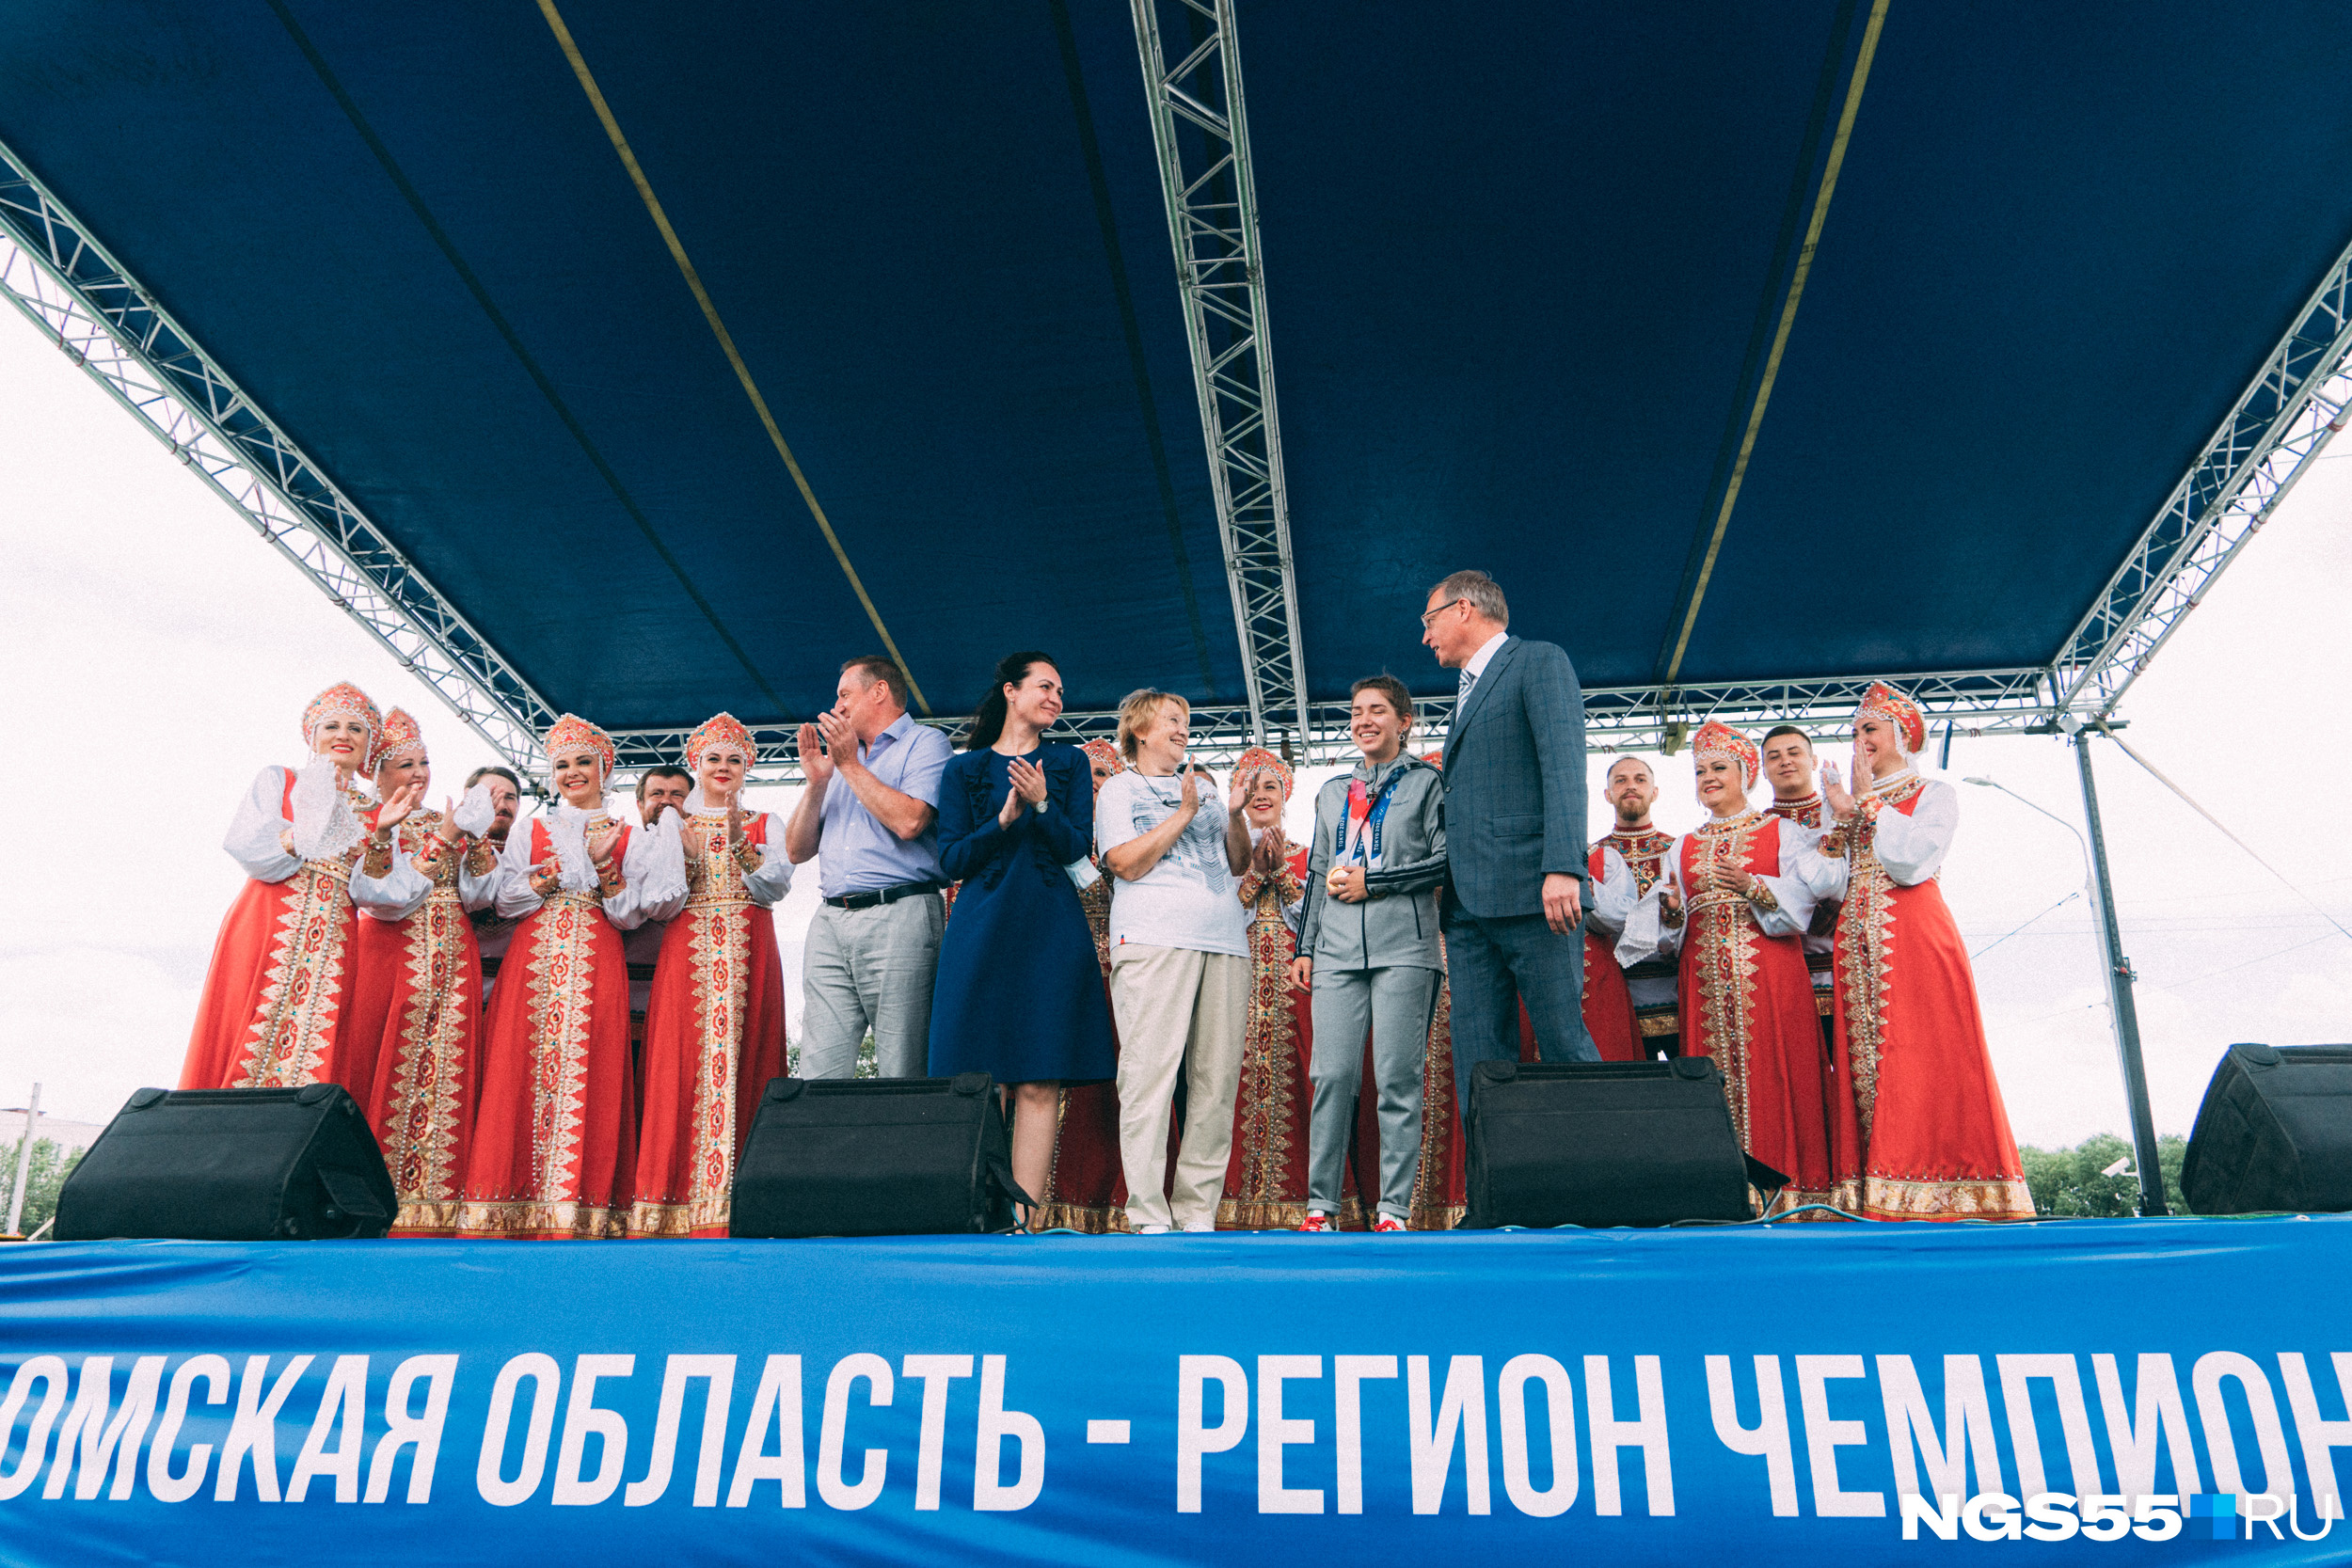 Как сказал губернатор, спортсменке выделят 11 миллионов рублей призовых